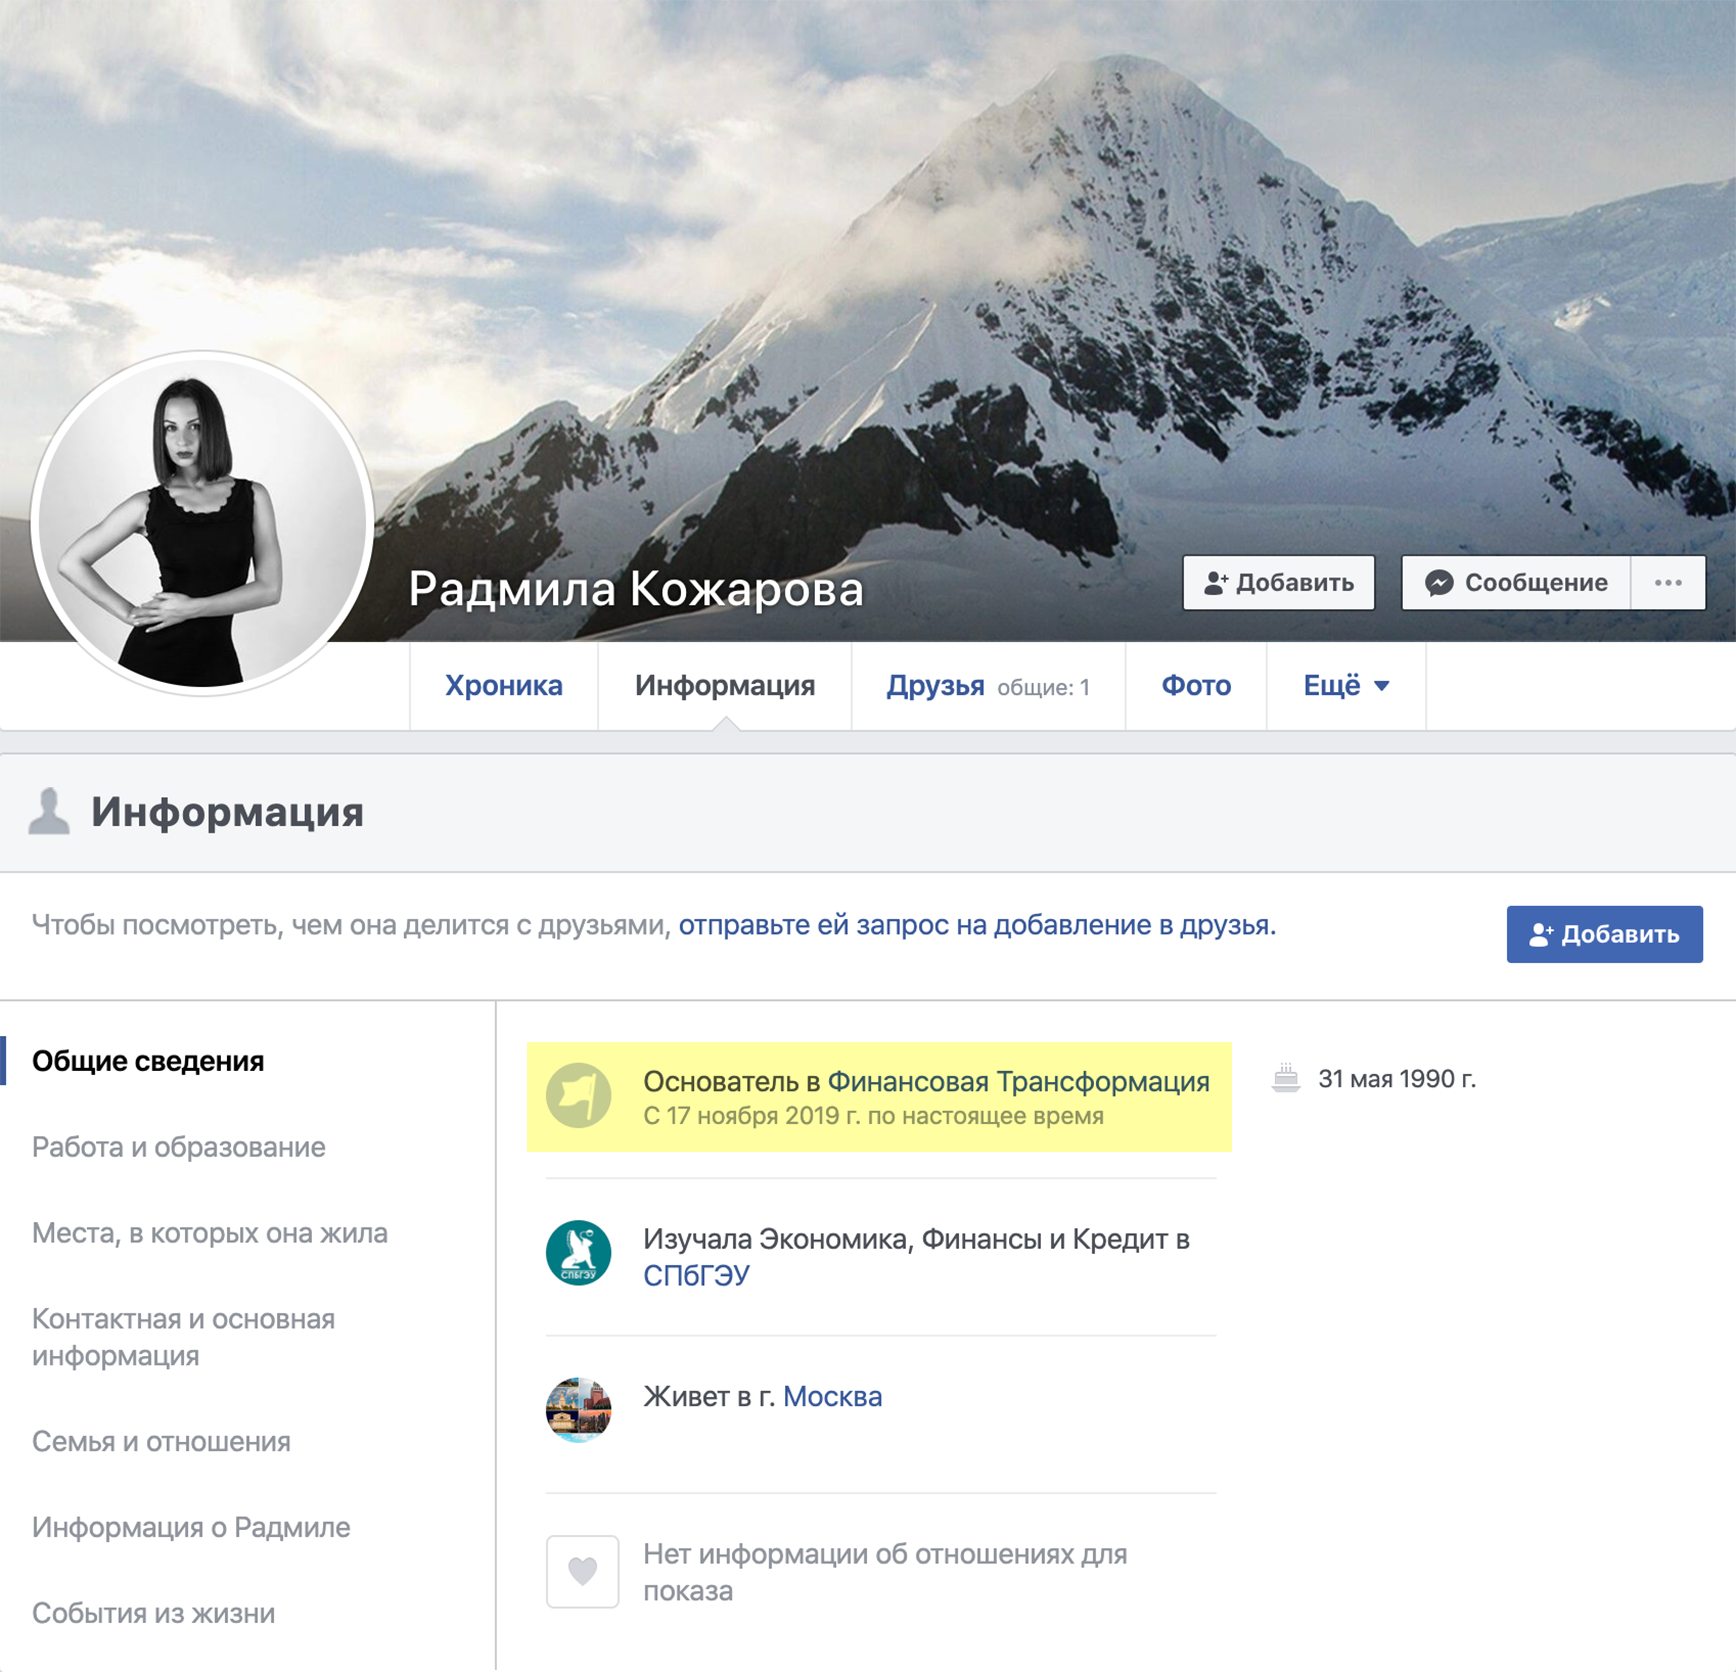 Но, если верить профилю Кожаровой в Фейсбуке, «Финтранс» она основала только в ноябре 2019 года. Про ее опыт работы в других компаниях соцсеть не знает